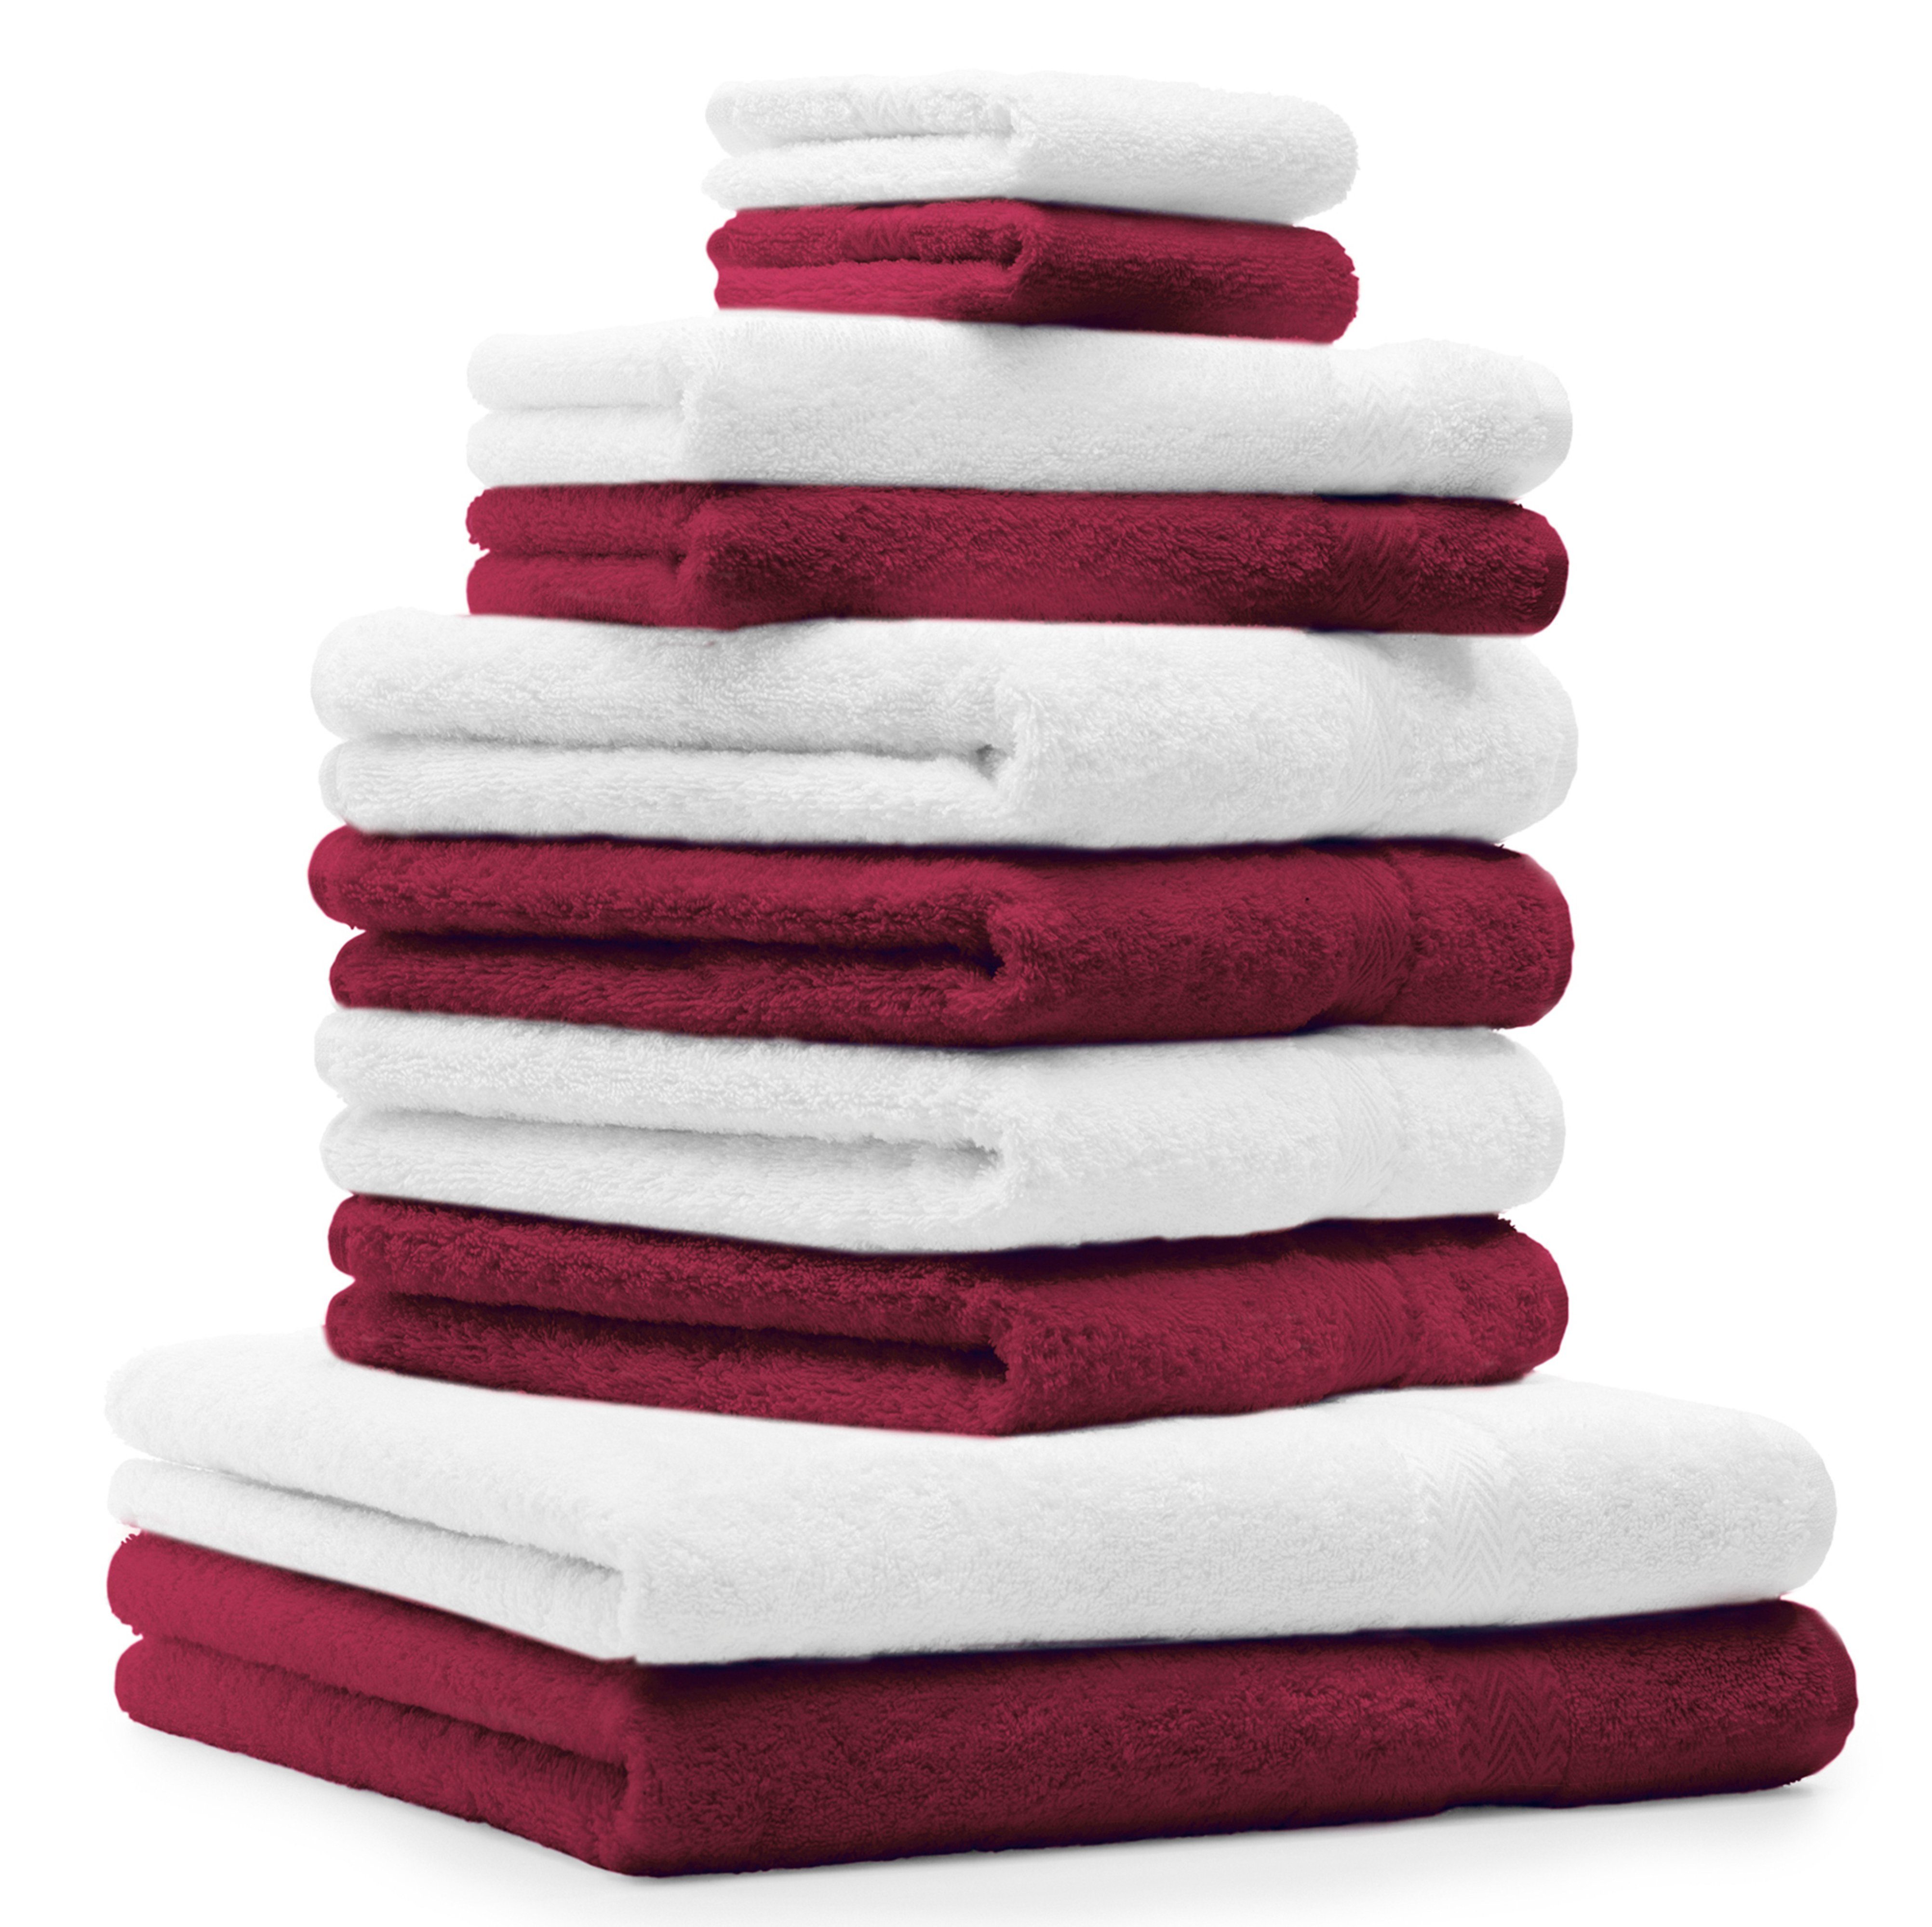 Betz Handtuch Set 10-TLG. Handtuch-Set Premium Farbe Dunkelrot & Weiß, 100% Baumwolle, (10-tlg)